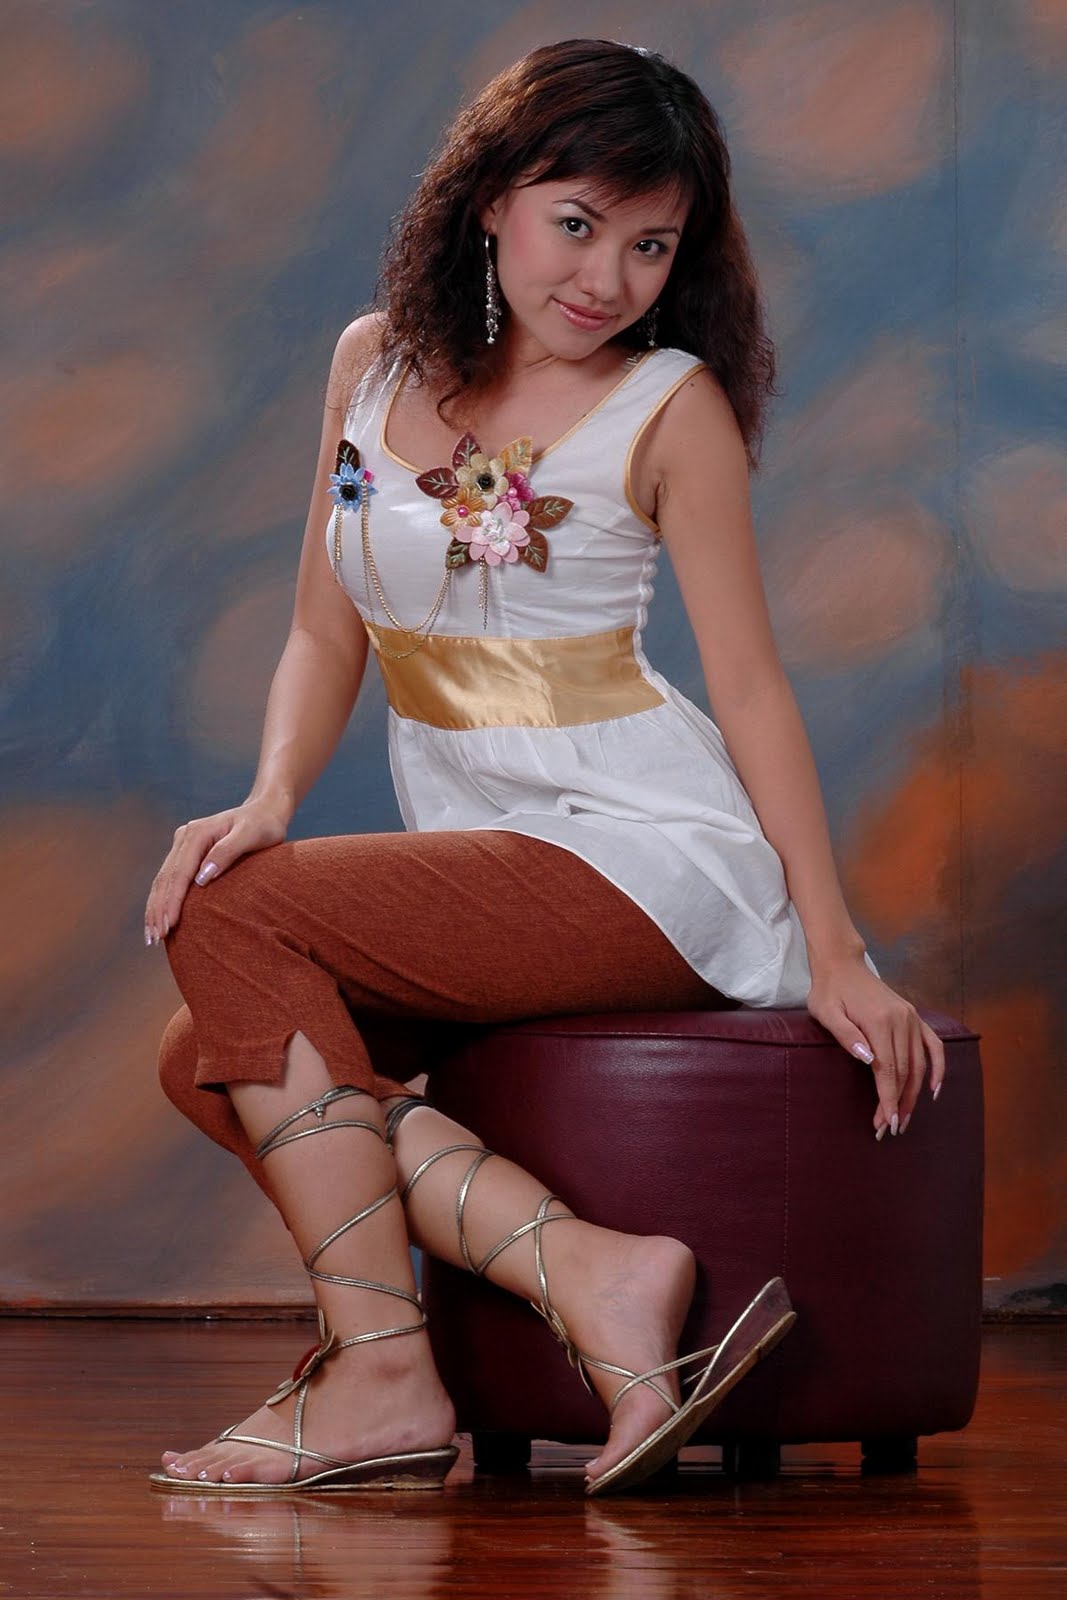 Photo Model: Myanmar Model and Actress, Ei Phyo Cherrys 